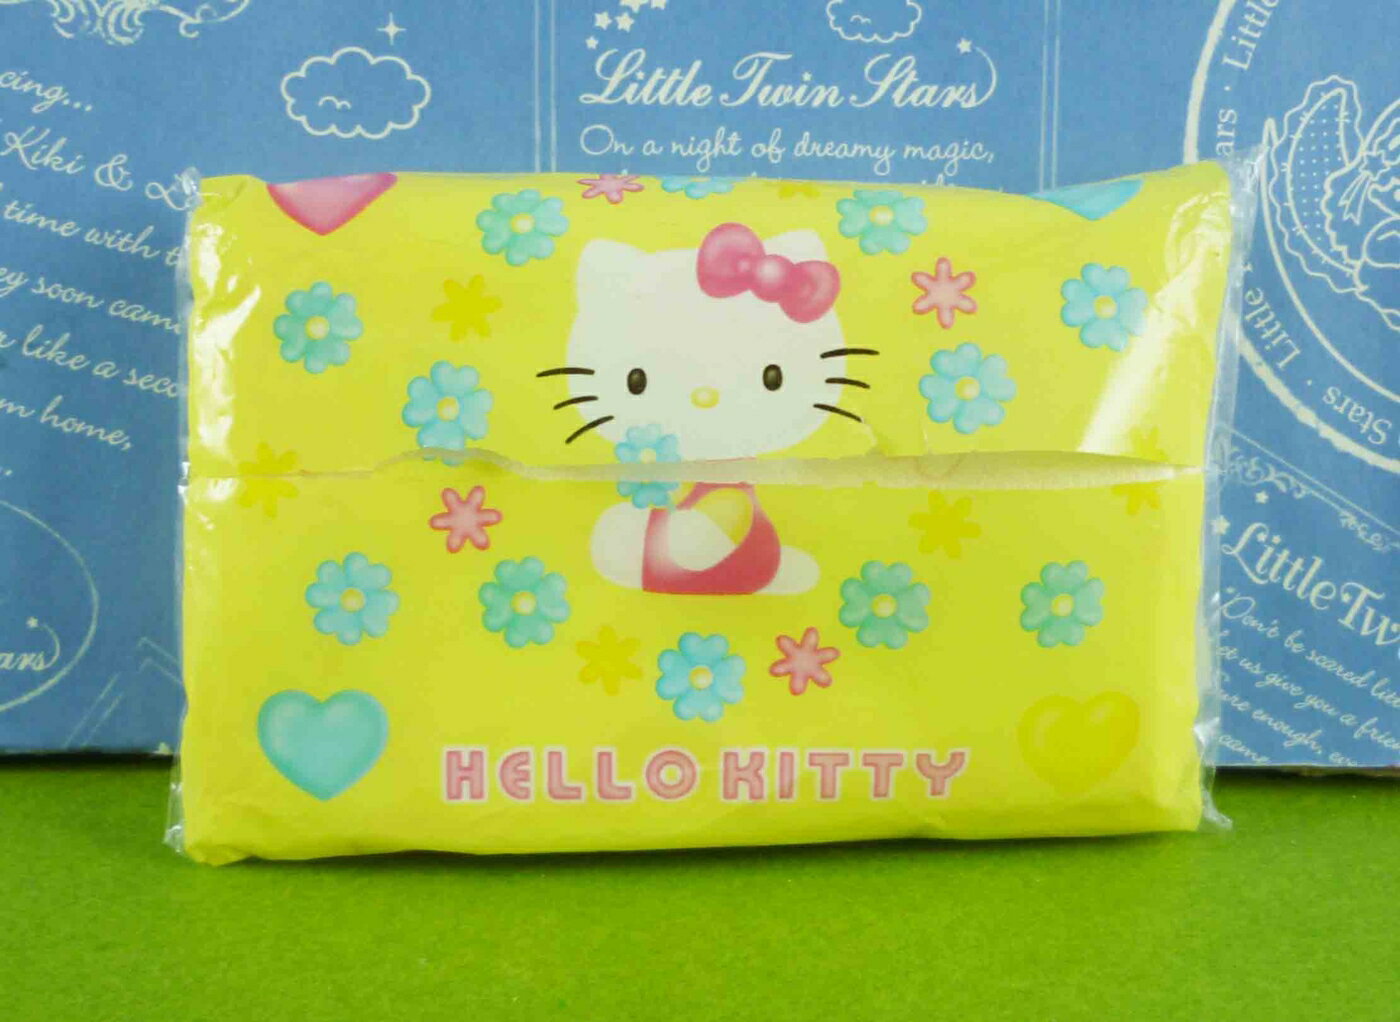 【震撼精品百貨】Hello Kitty 凱蒂貓 袖珍面紙-黃底拿花造型【共1款】 震撼日式精品百貨